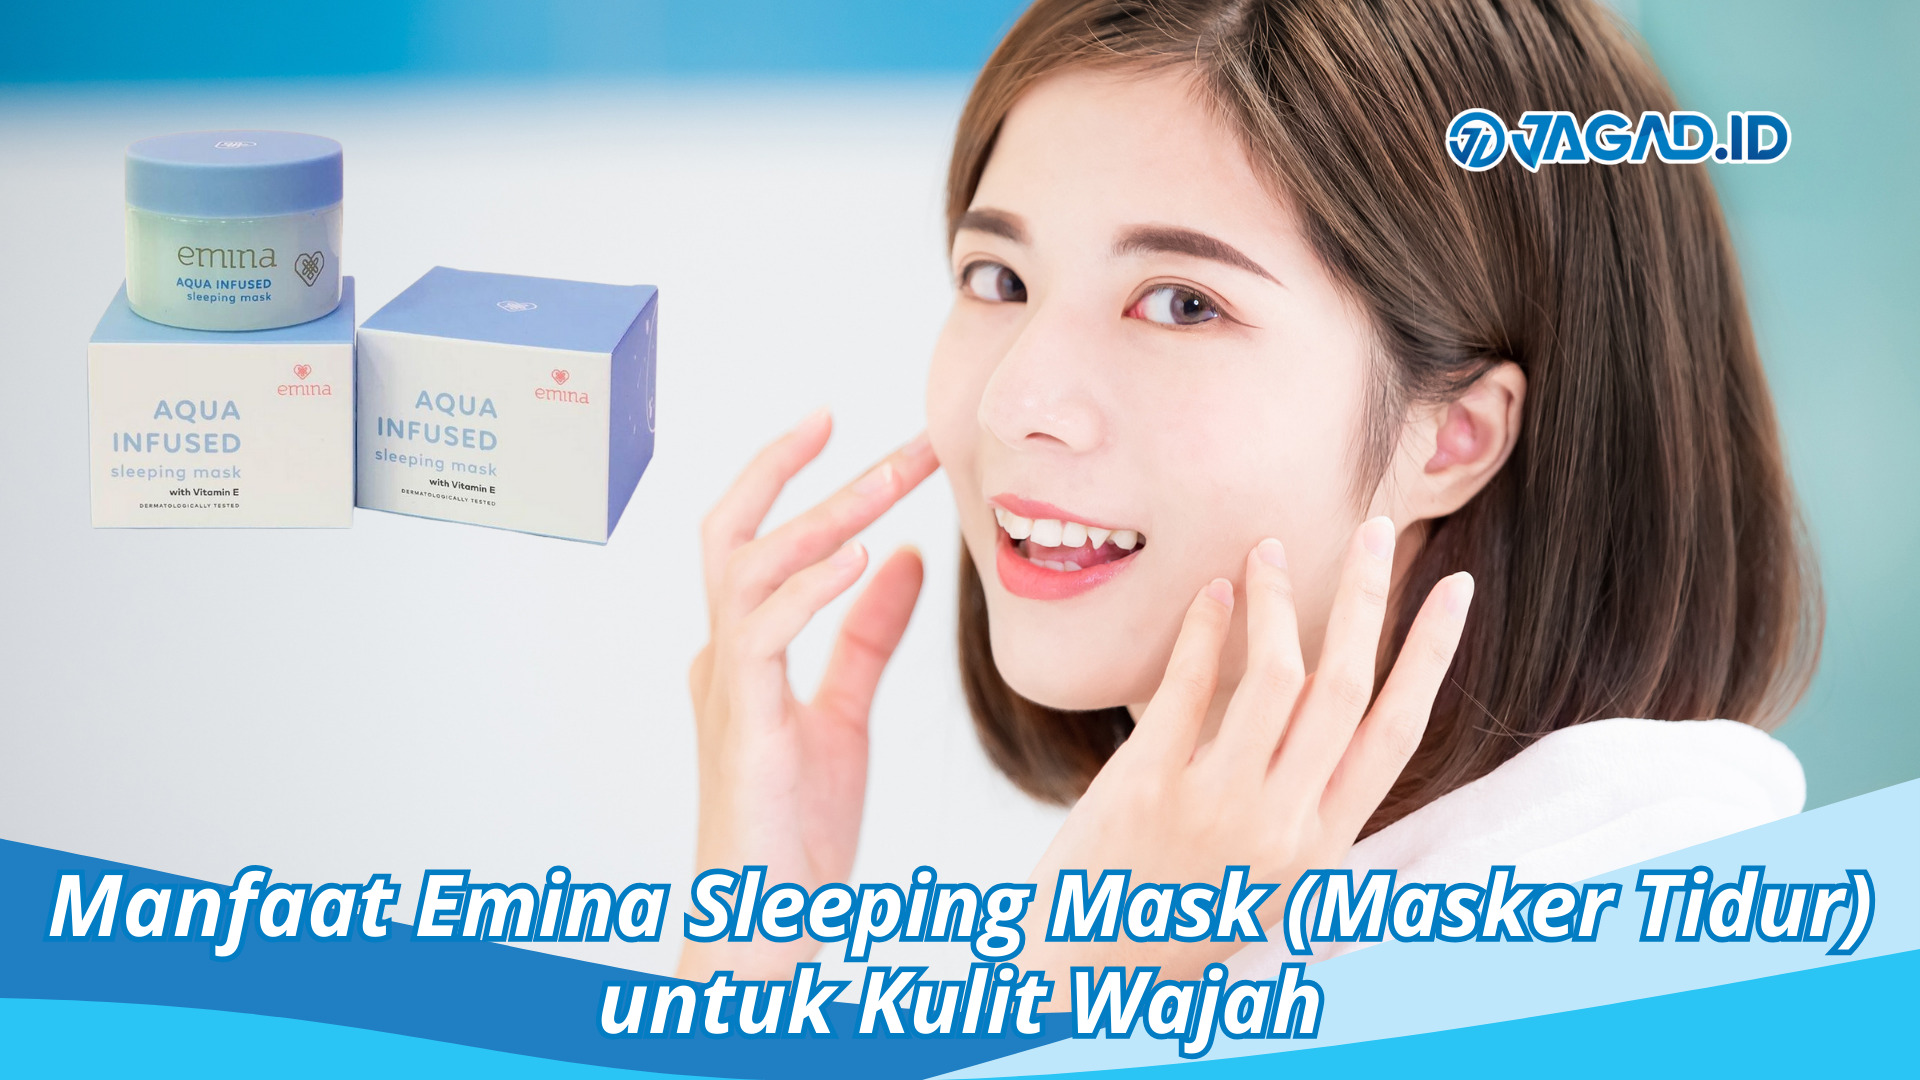 Manfaat Emina Sleeping Mask